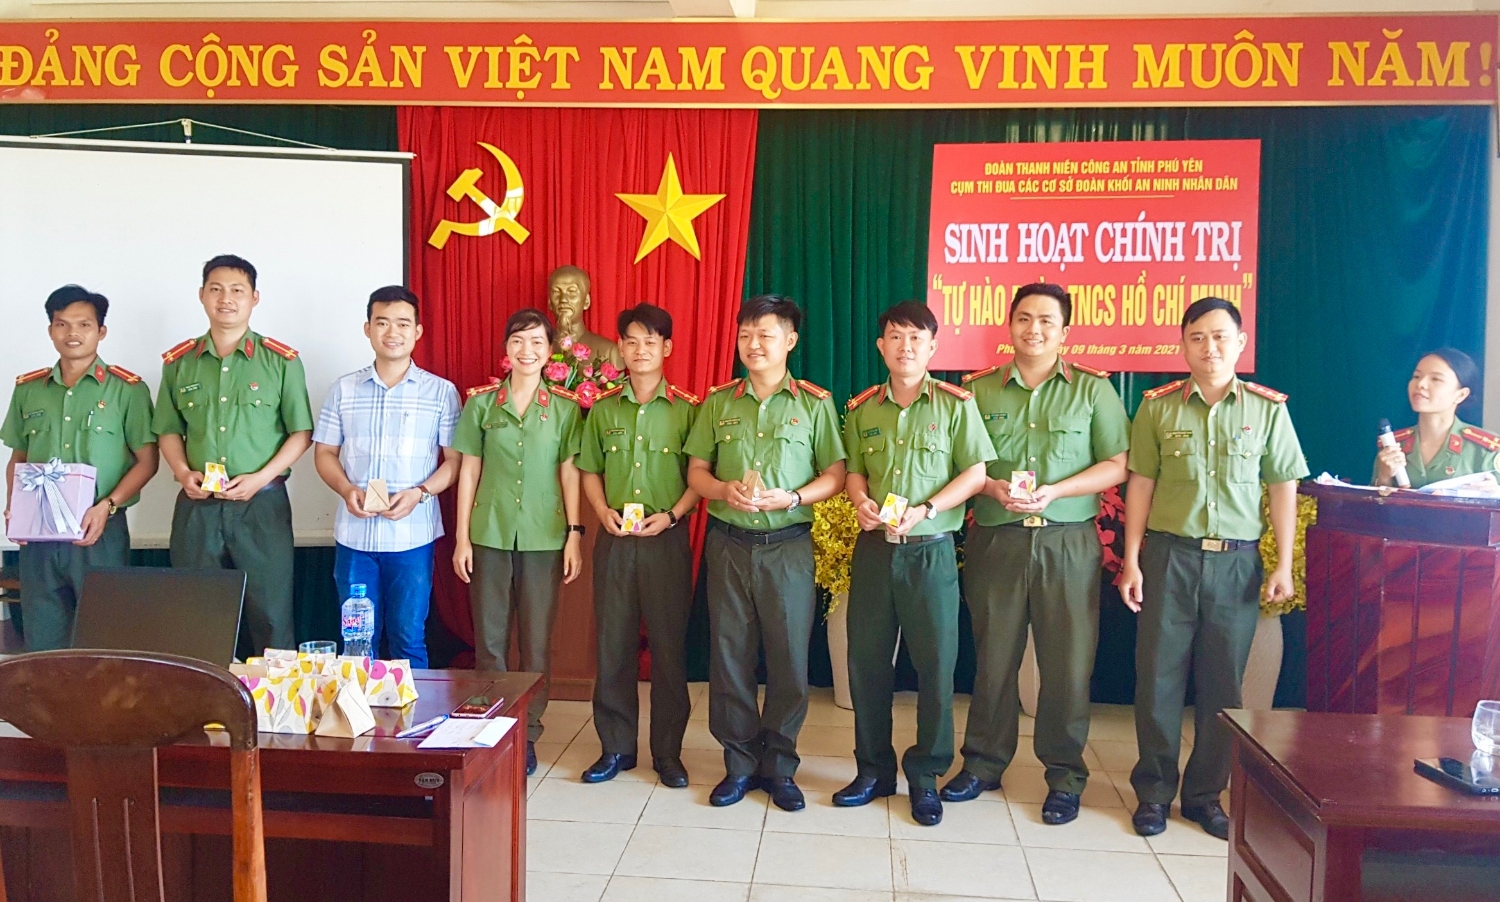 Cụm thi đua Khối An ninh nhân dân tổ chức sinh hoạt chính trị “Tự hào Đoàn TNCS Hồ Chí Minh”